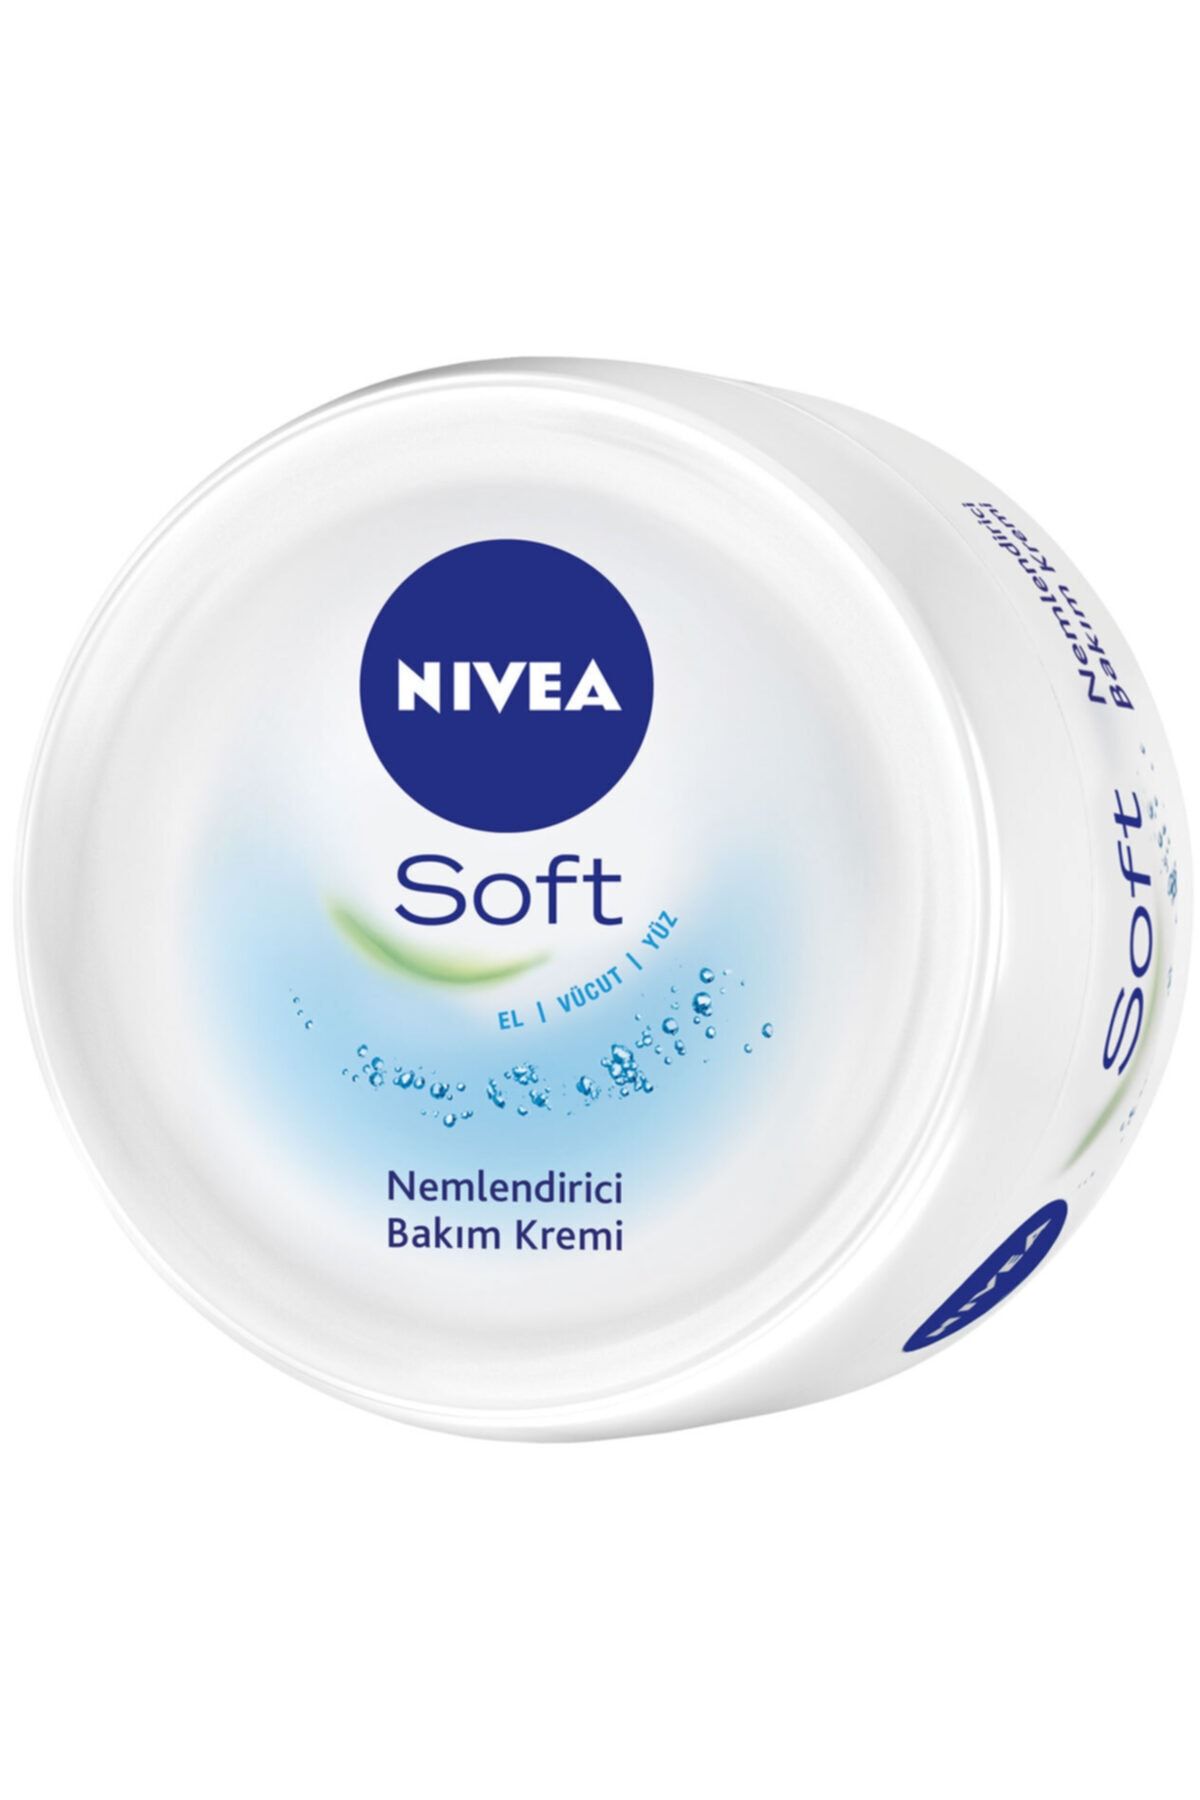 NIVEA Soft Krem 200 ml